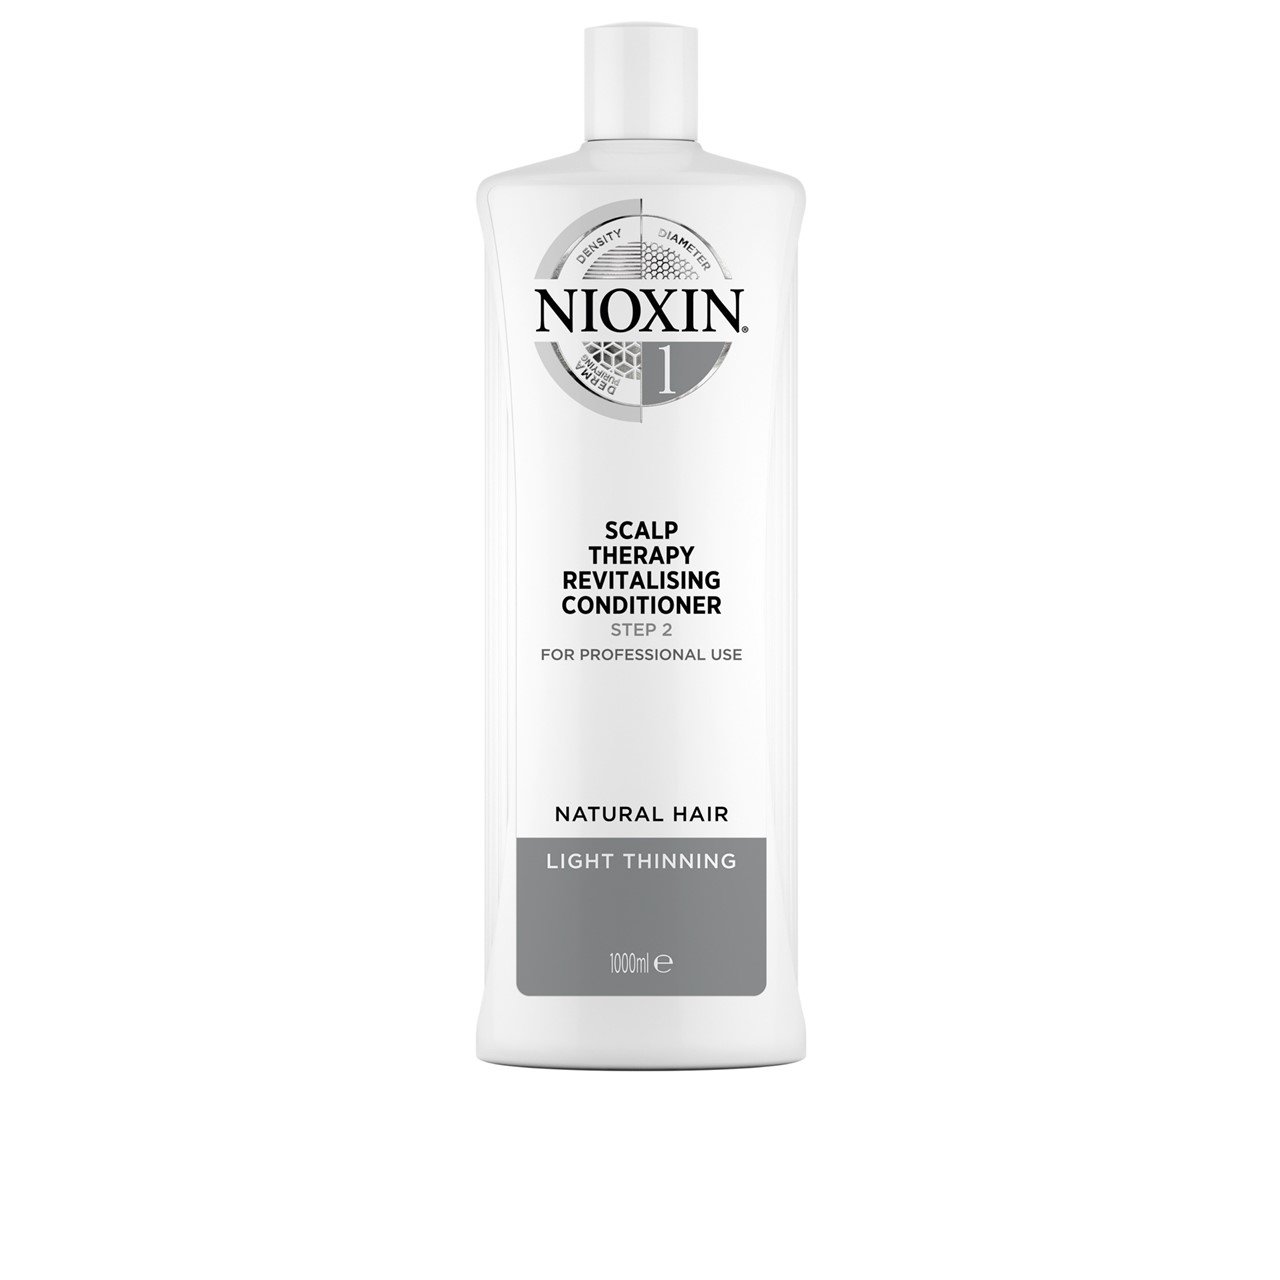 Nioxin System 1 Scalp Therapy Conditioner 1L (33.81fl oz)